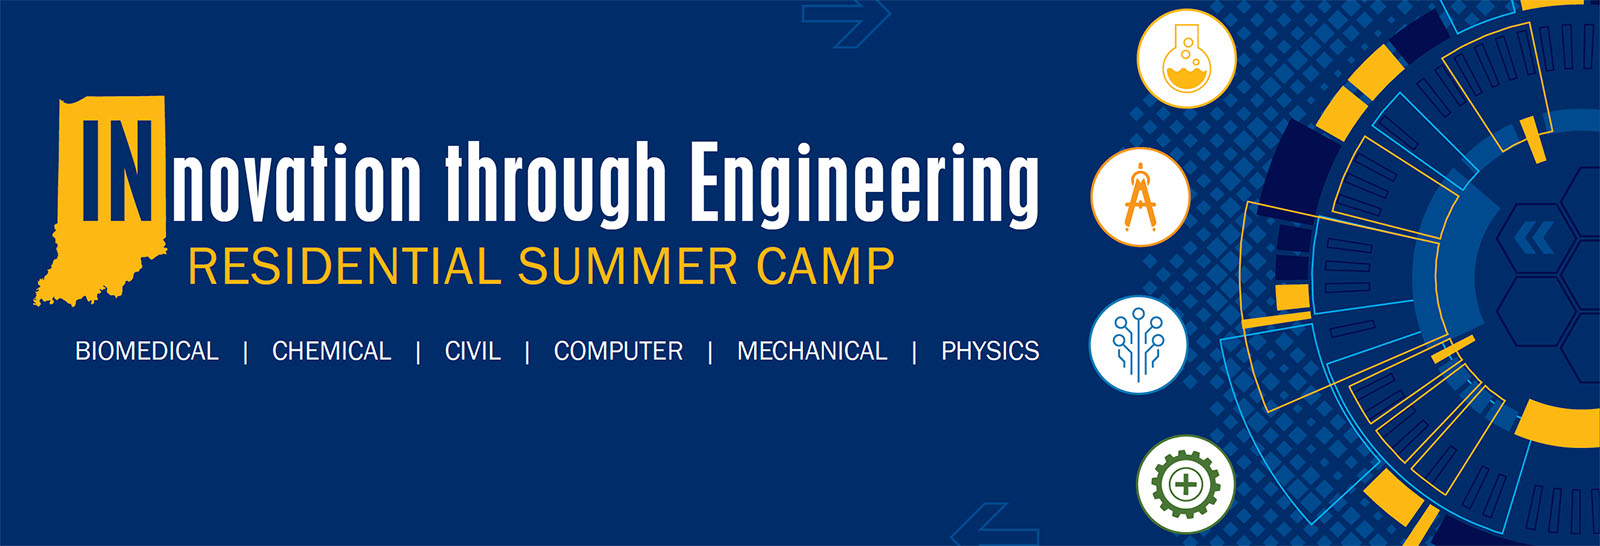 innovation summer camp engineering